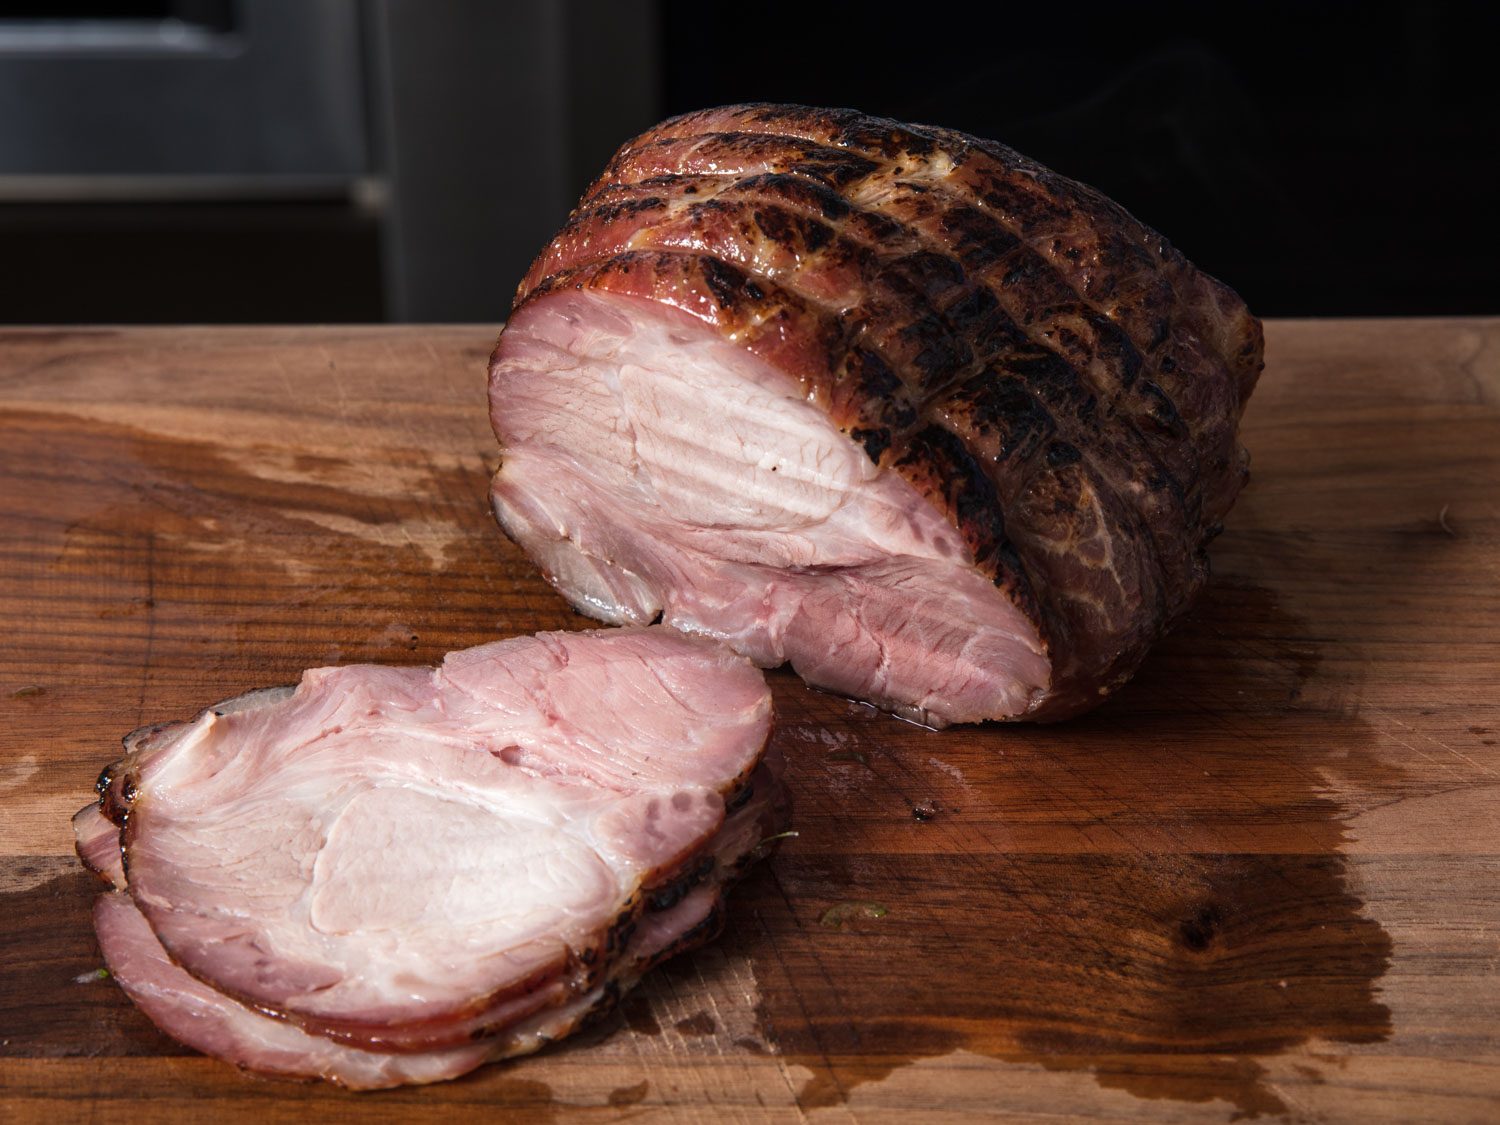 Pork shoulder roast next to slices carved off roast